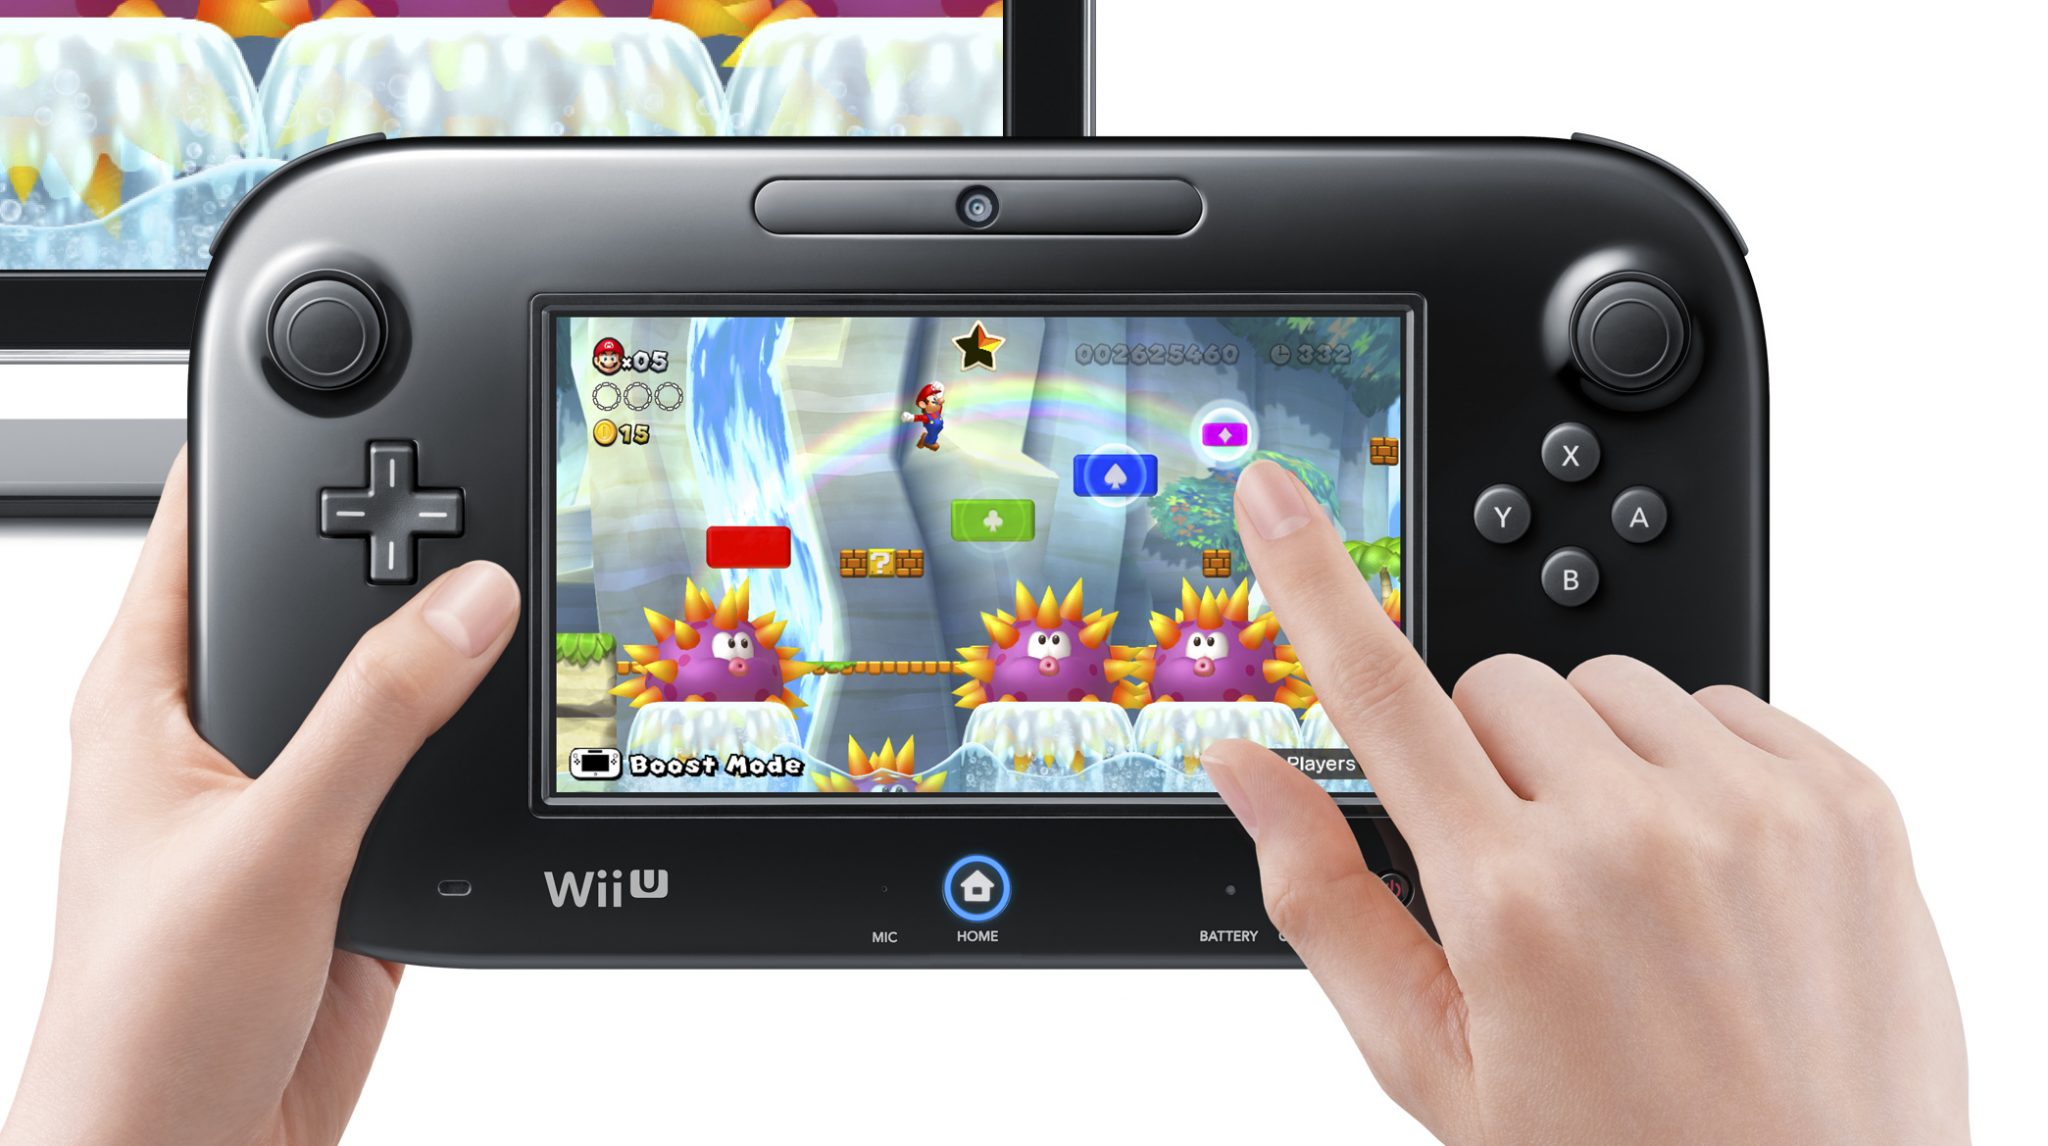 Termina la producción de Wii U en Japón según su pagina web oficial